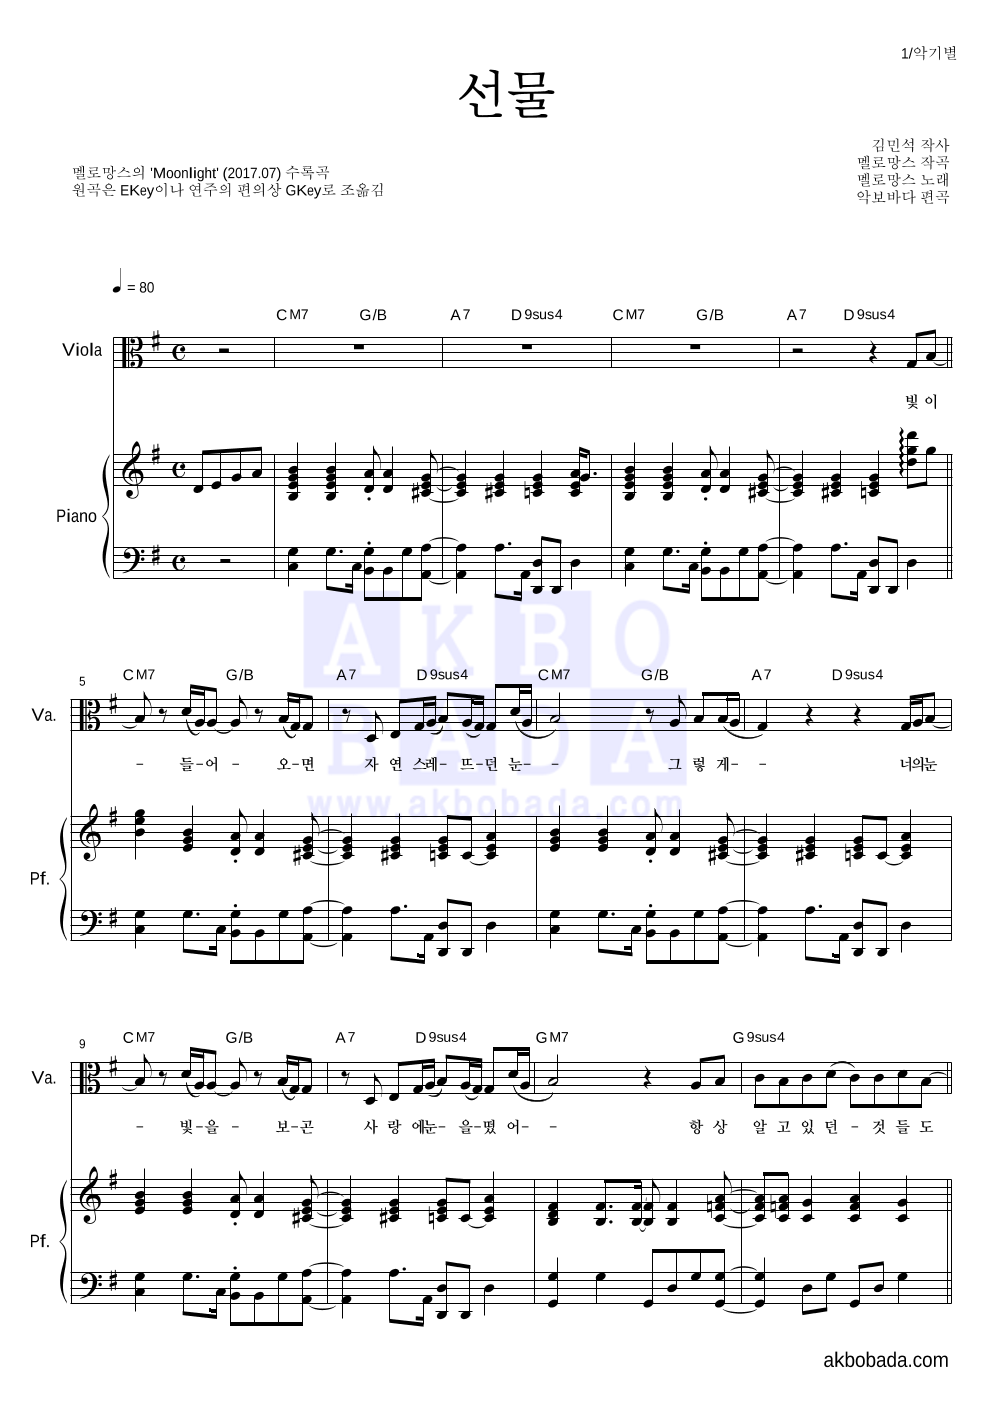 멜로망스 - 선물 비올라&피아노 악보 